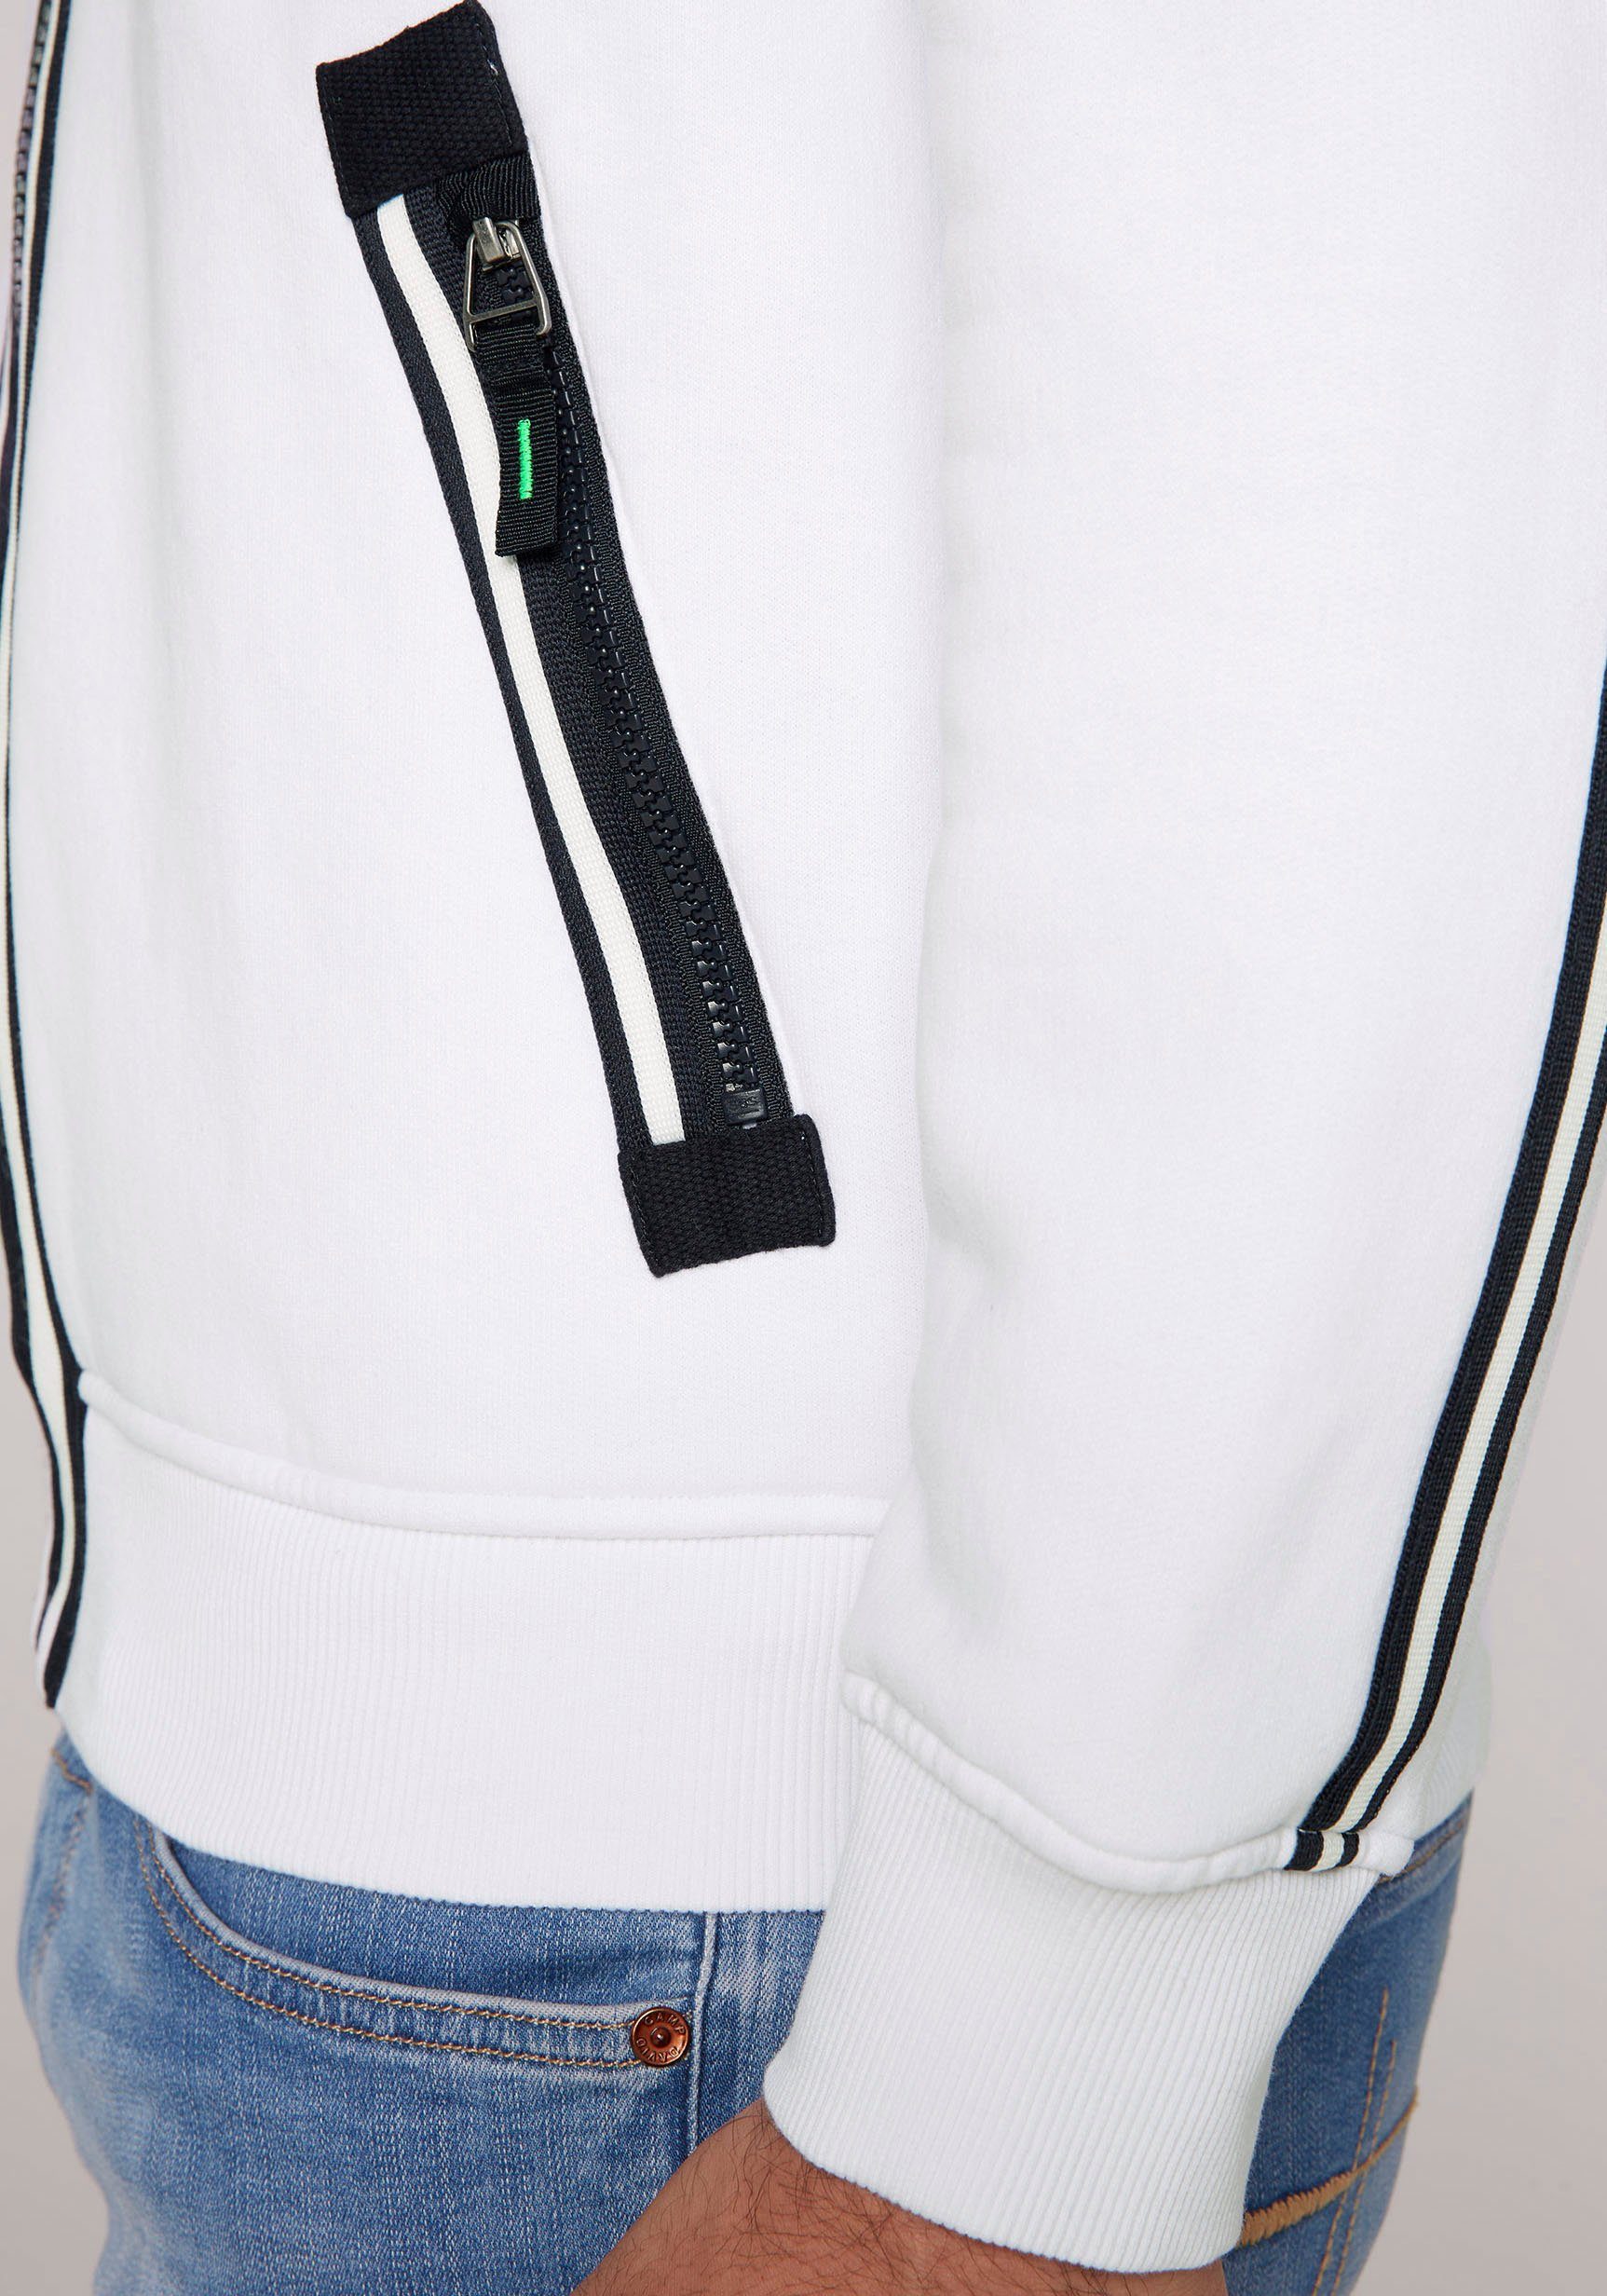 Rückseite DAVID opticwhite Vorder- und Kapuzensweatshirt Label-Applikationen auf CAMP mit